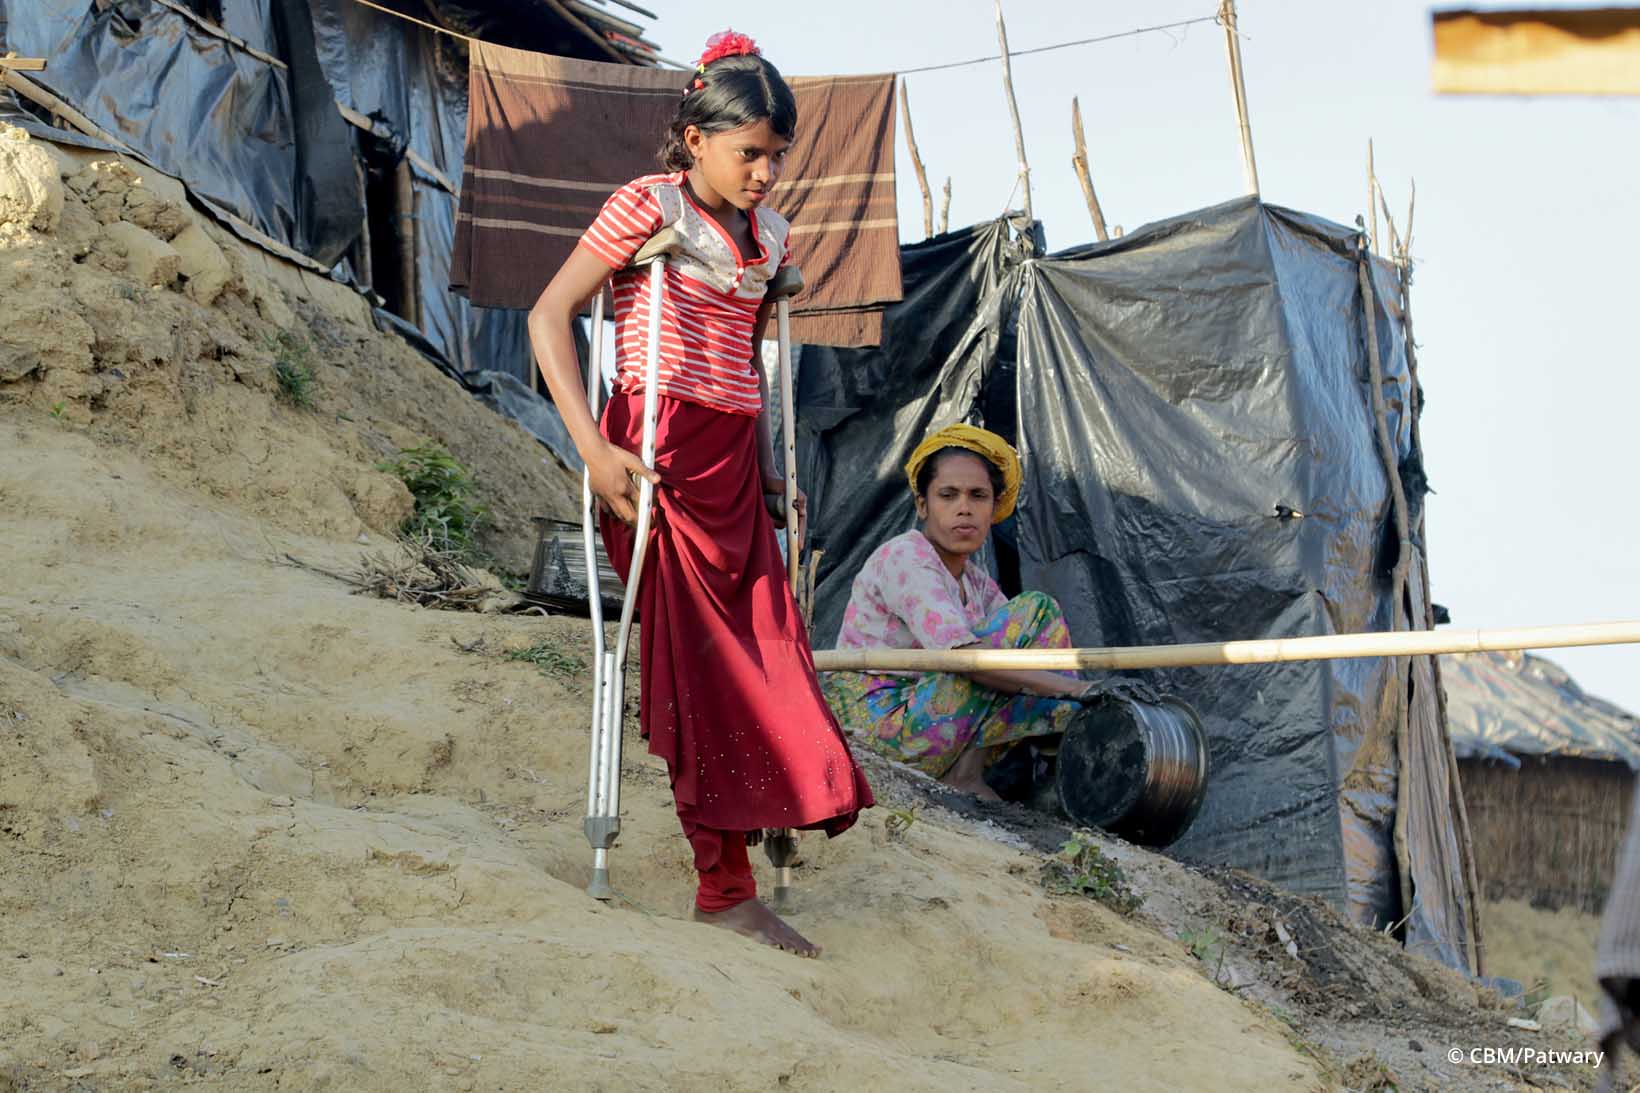 Una bambina Rohingya scende con prudenza con l’aiuto delle stampelle una scala scavata nella terra fangosa.  